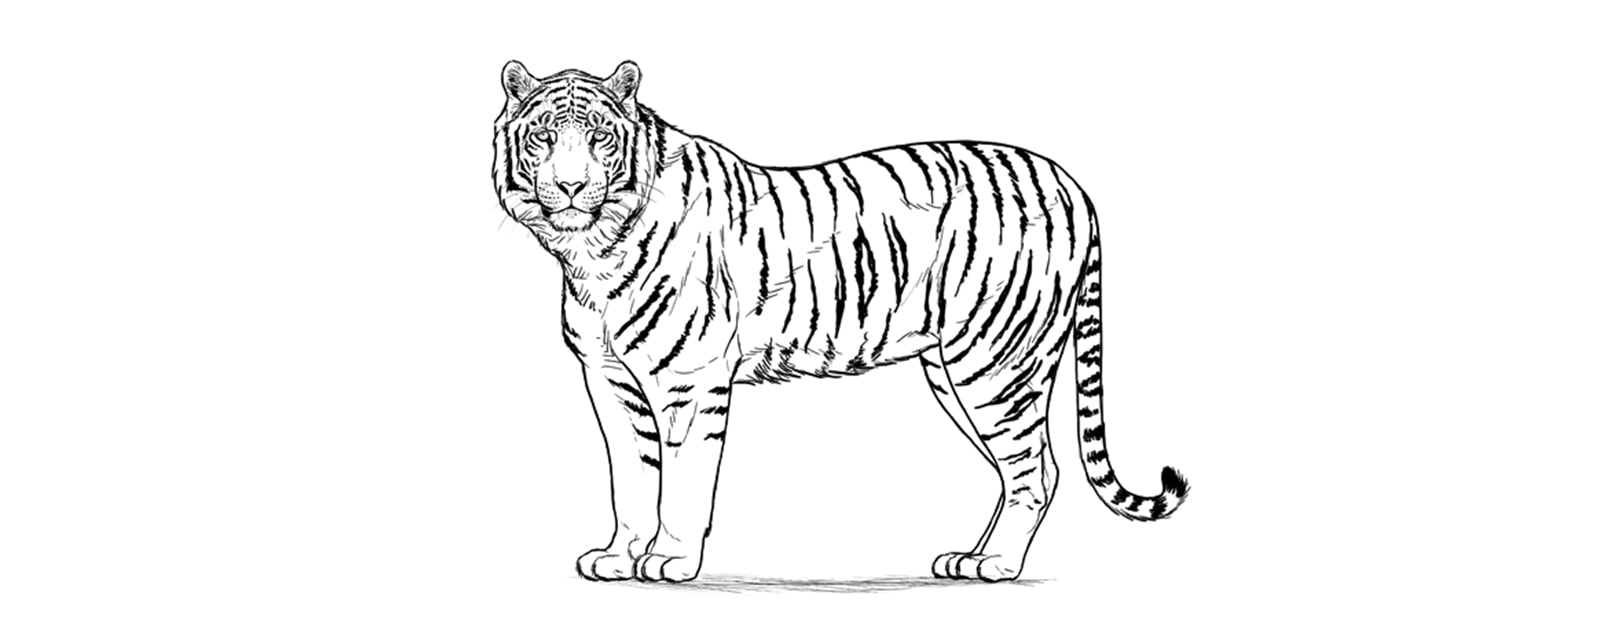 Terminez le dessin du tigre